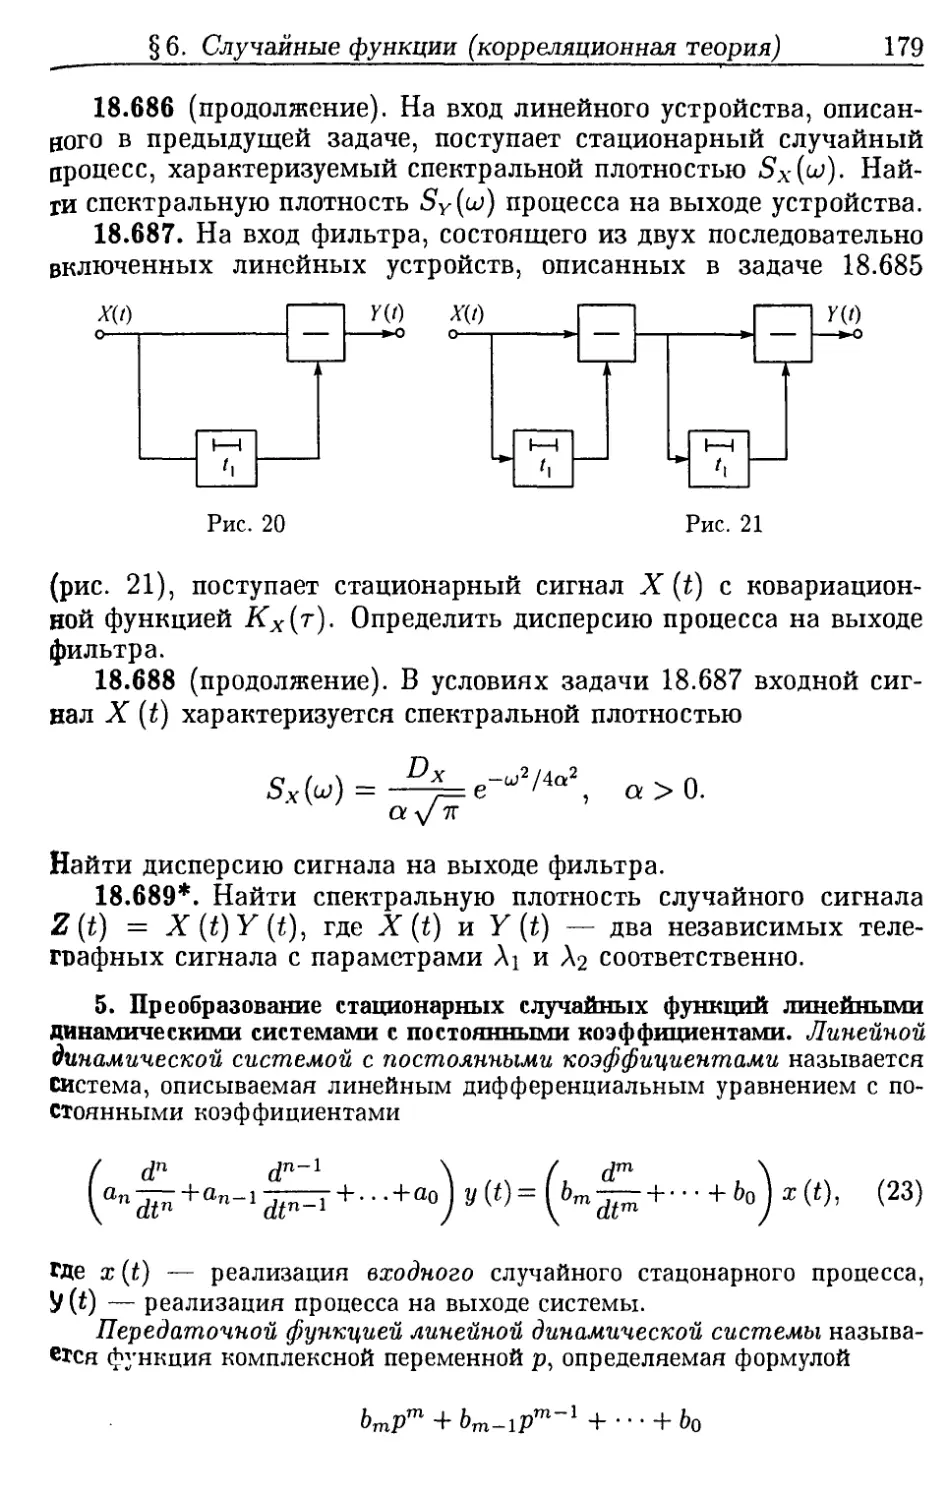 5. Преобразование стационарных случайных функций линейными динамическими системами с постоянными коэффициентами